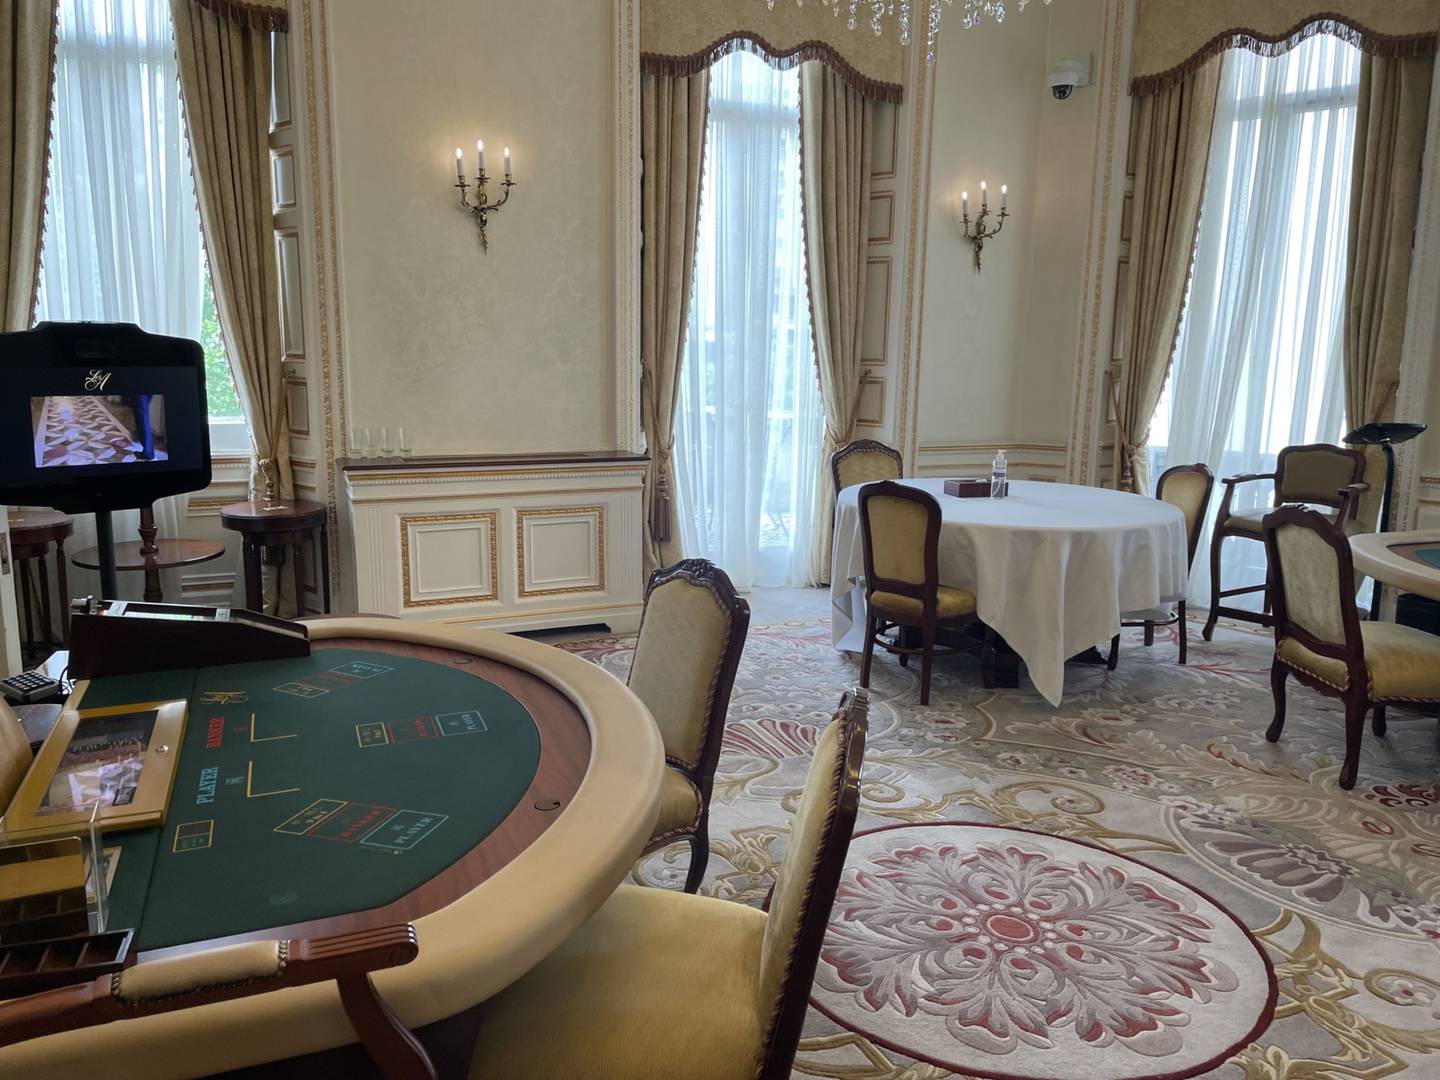 Una cámara (arriba a la derecha) en una de las salas de juego privadas del casino puede detectar quién acaba de entrar. Fotografía: Parmy Olson/Bloomberg